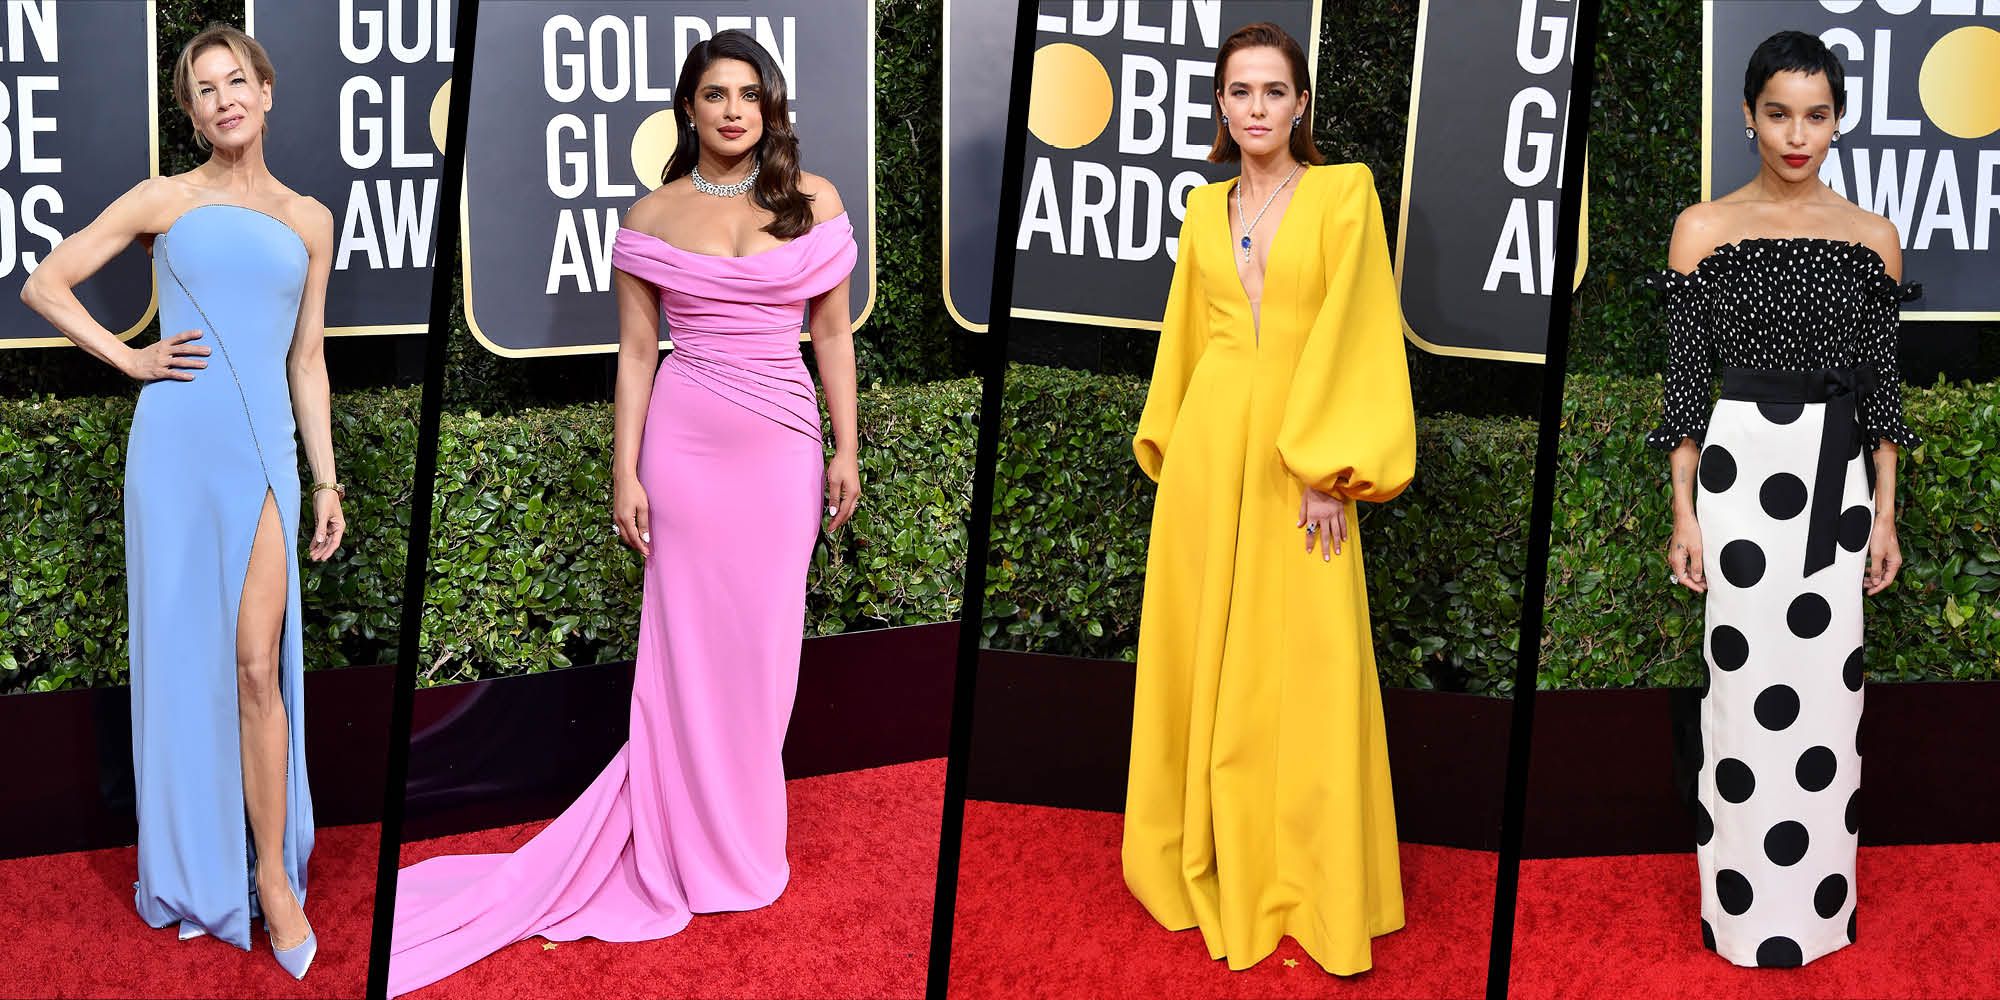 Golden Globes 2020: 10 best dressed